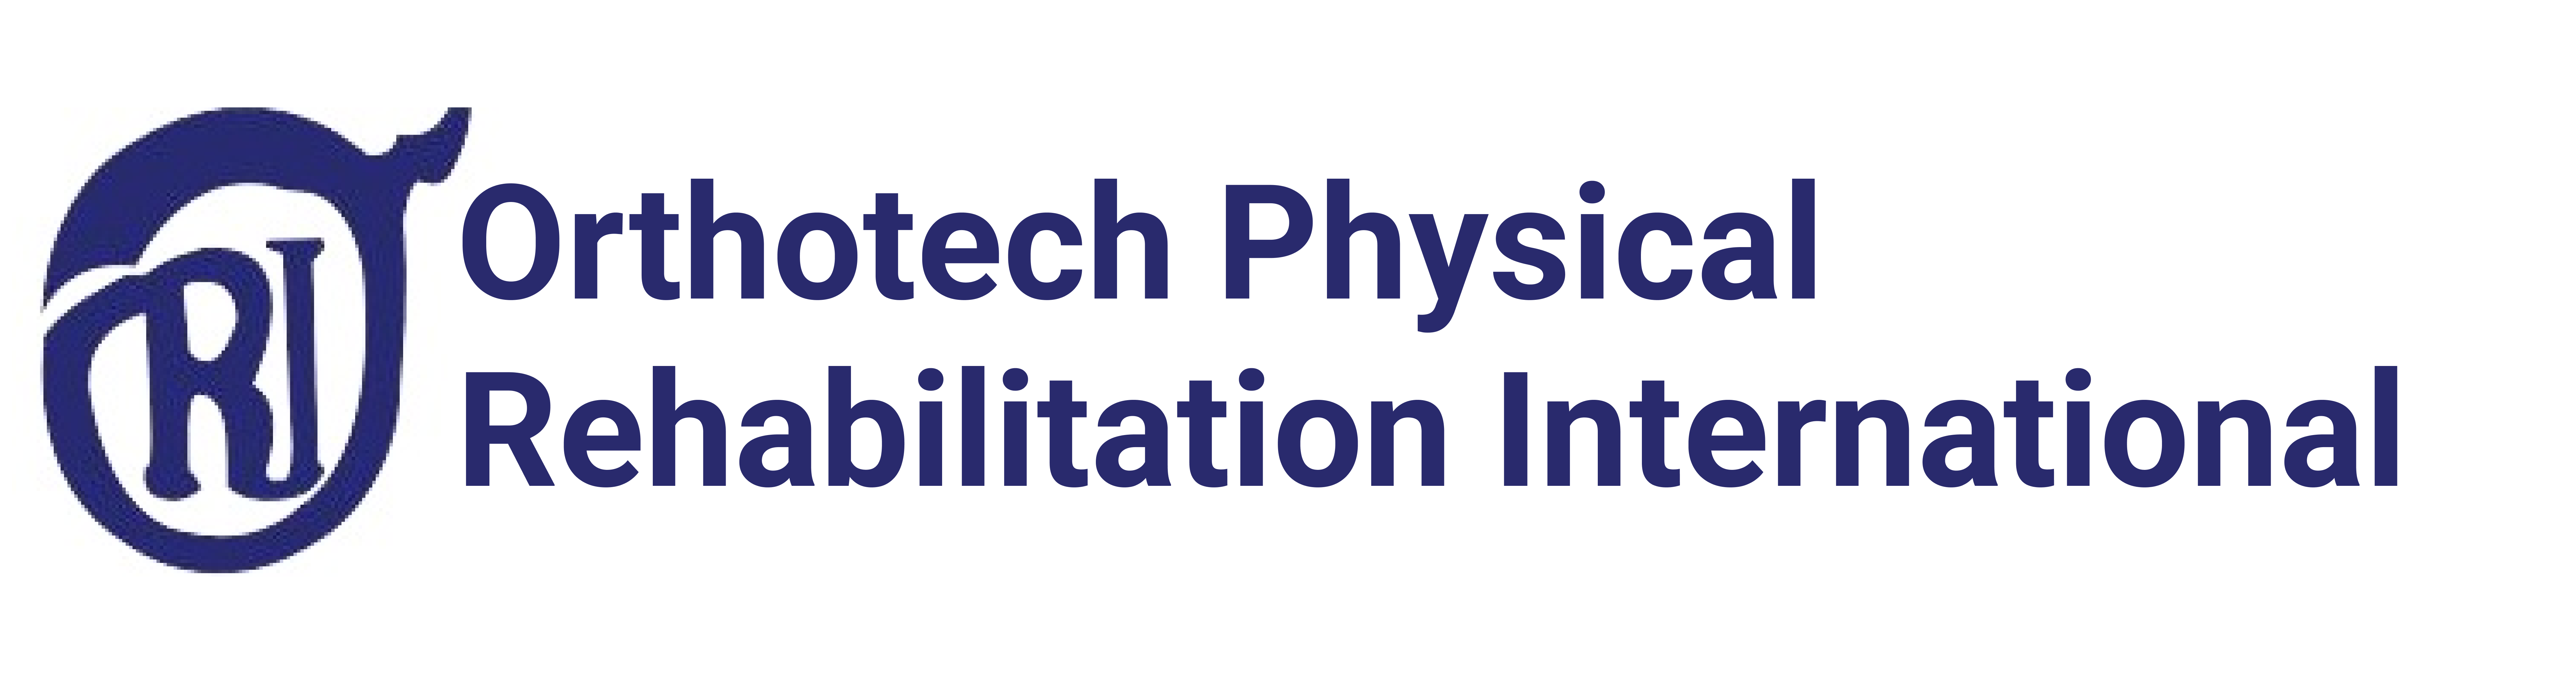 Orthotech Physical Rehabilitation International